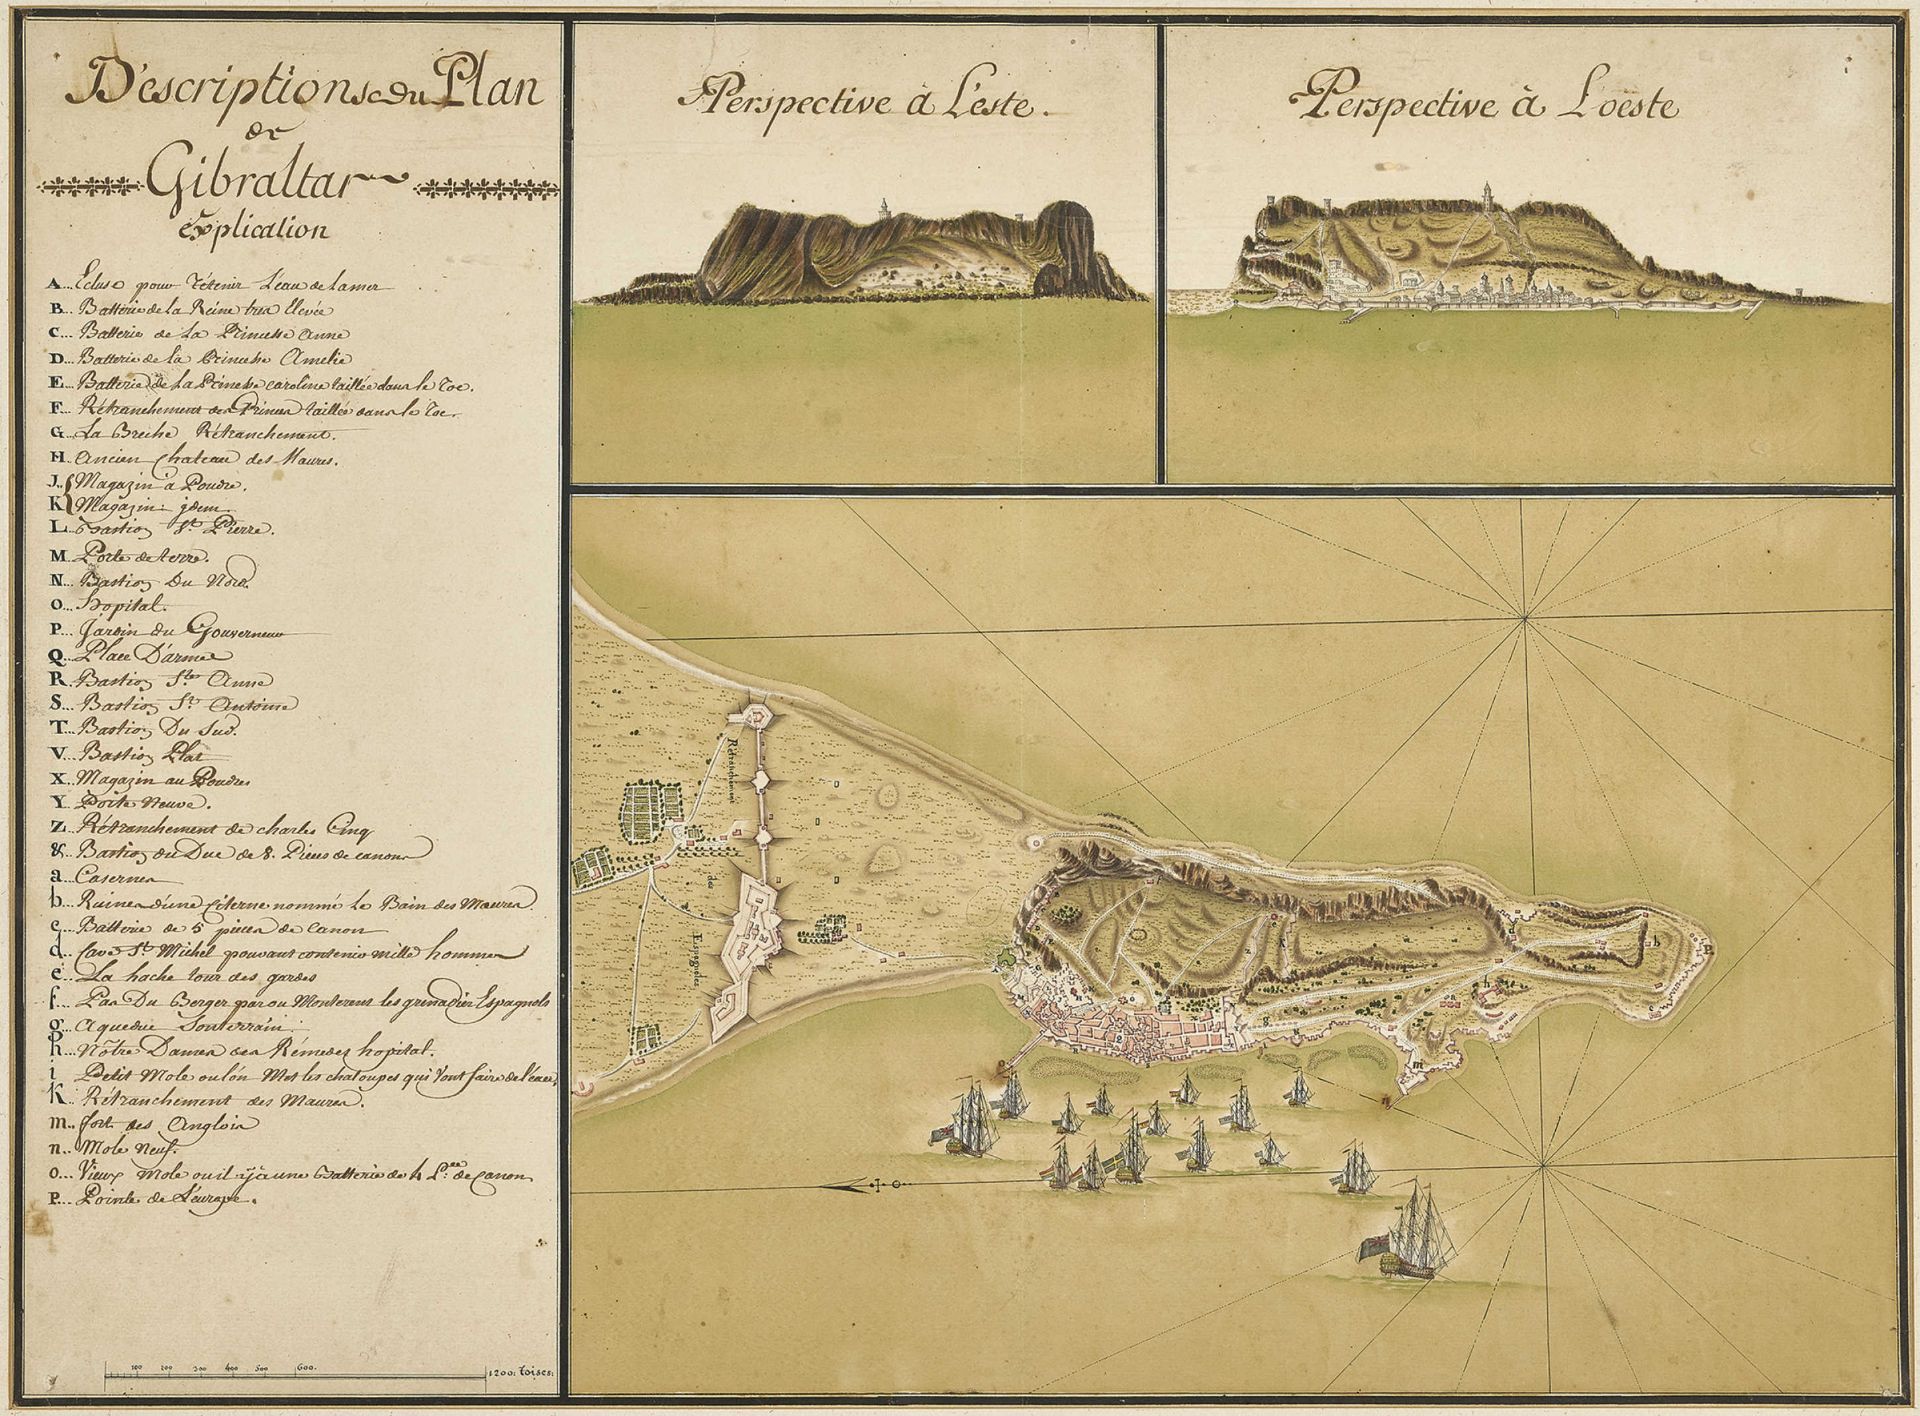 FRANKREICH, 18. JH.: Karten von Gibraltar. - Image 2 of 2